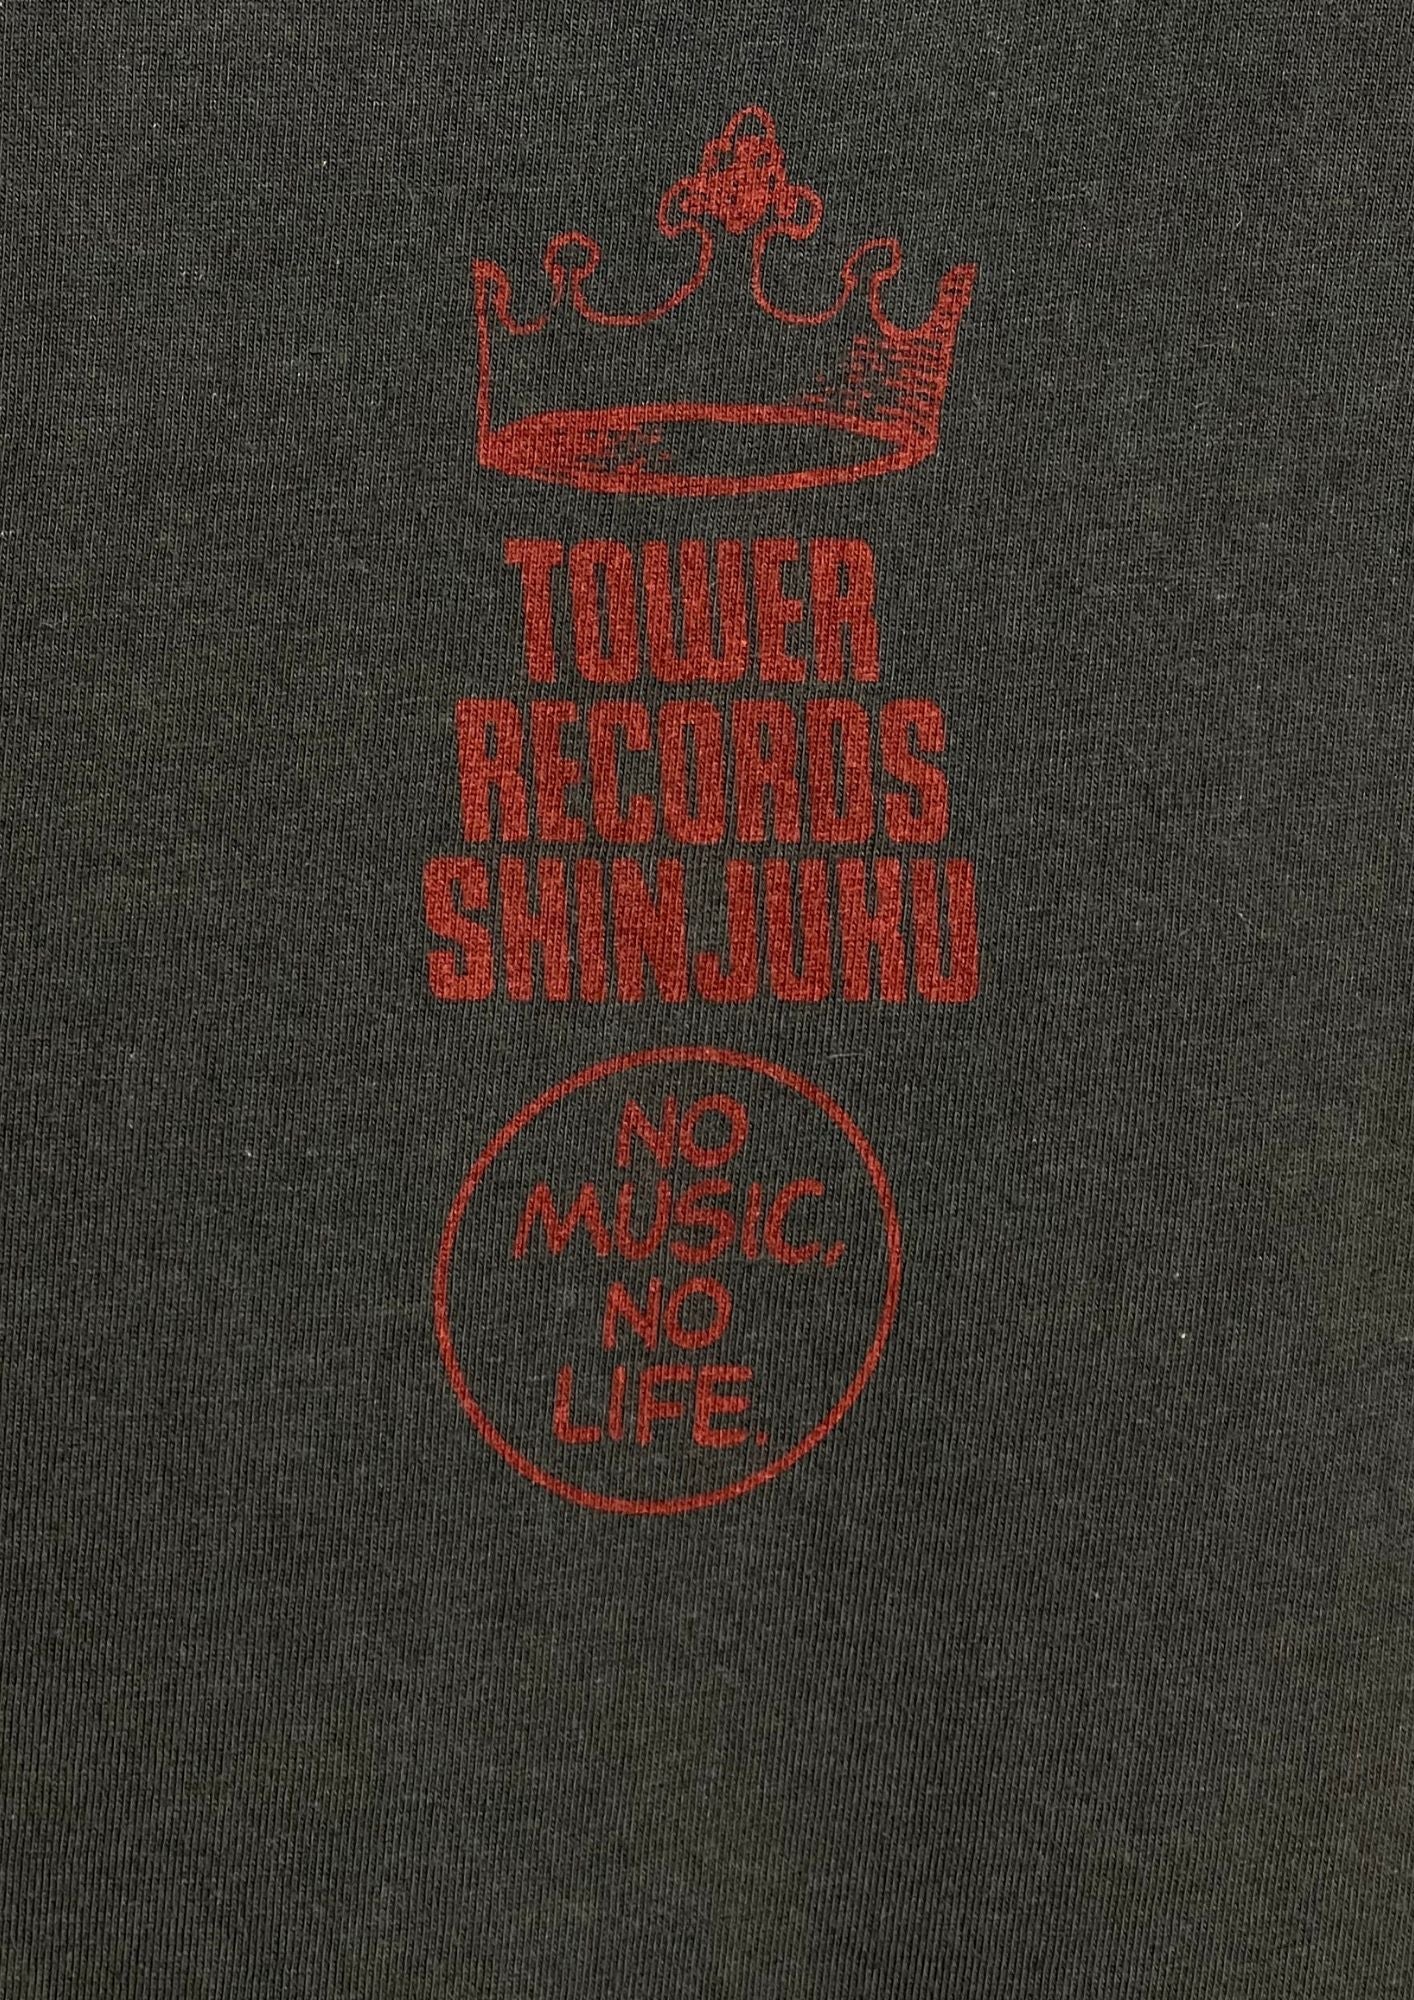 2013 SHEENA RINGO Tower Records 'No Music No Life' Japanese Band Baby Tee